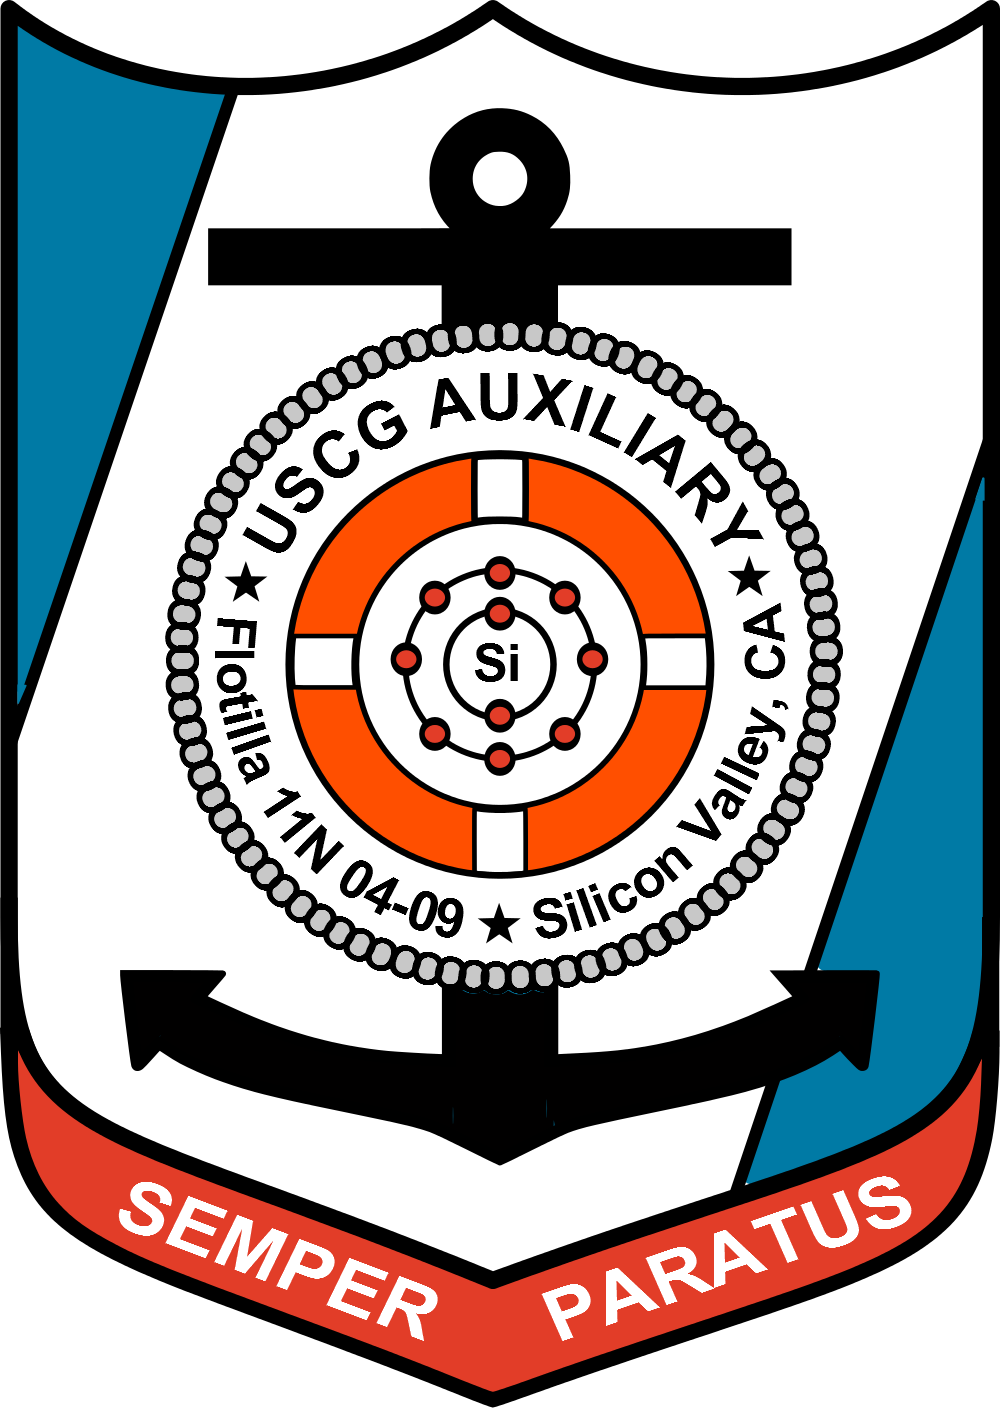 Flotilla 113-04-09 logo